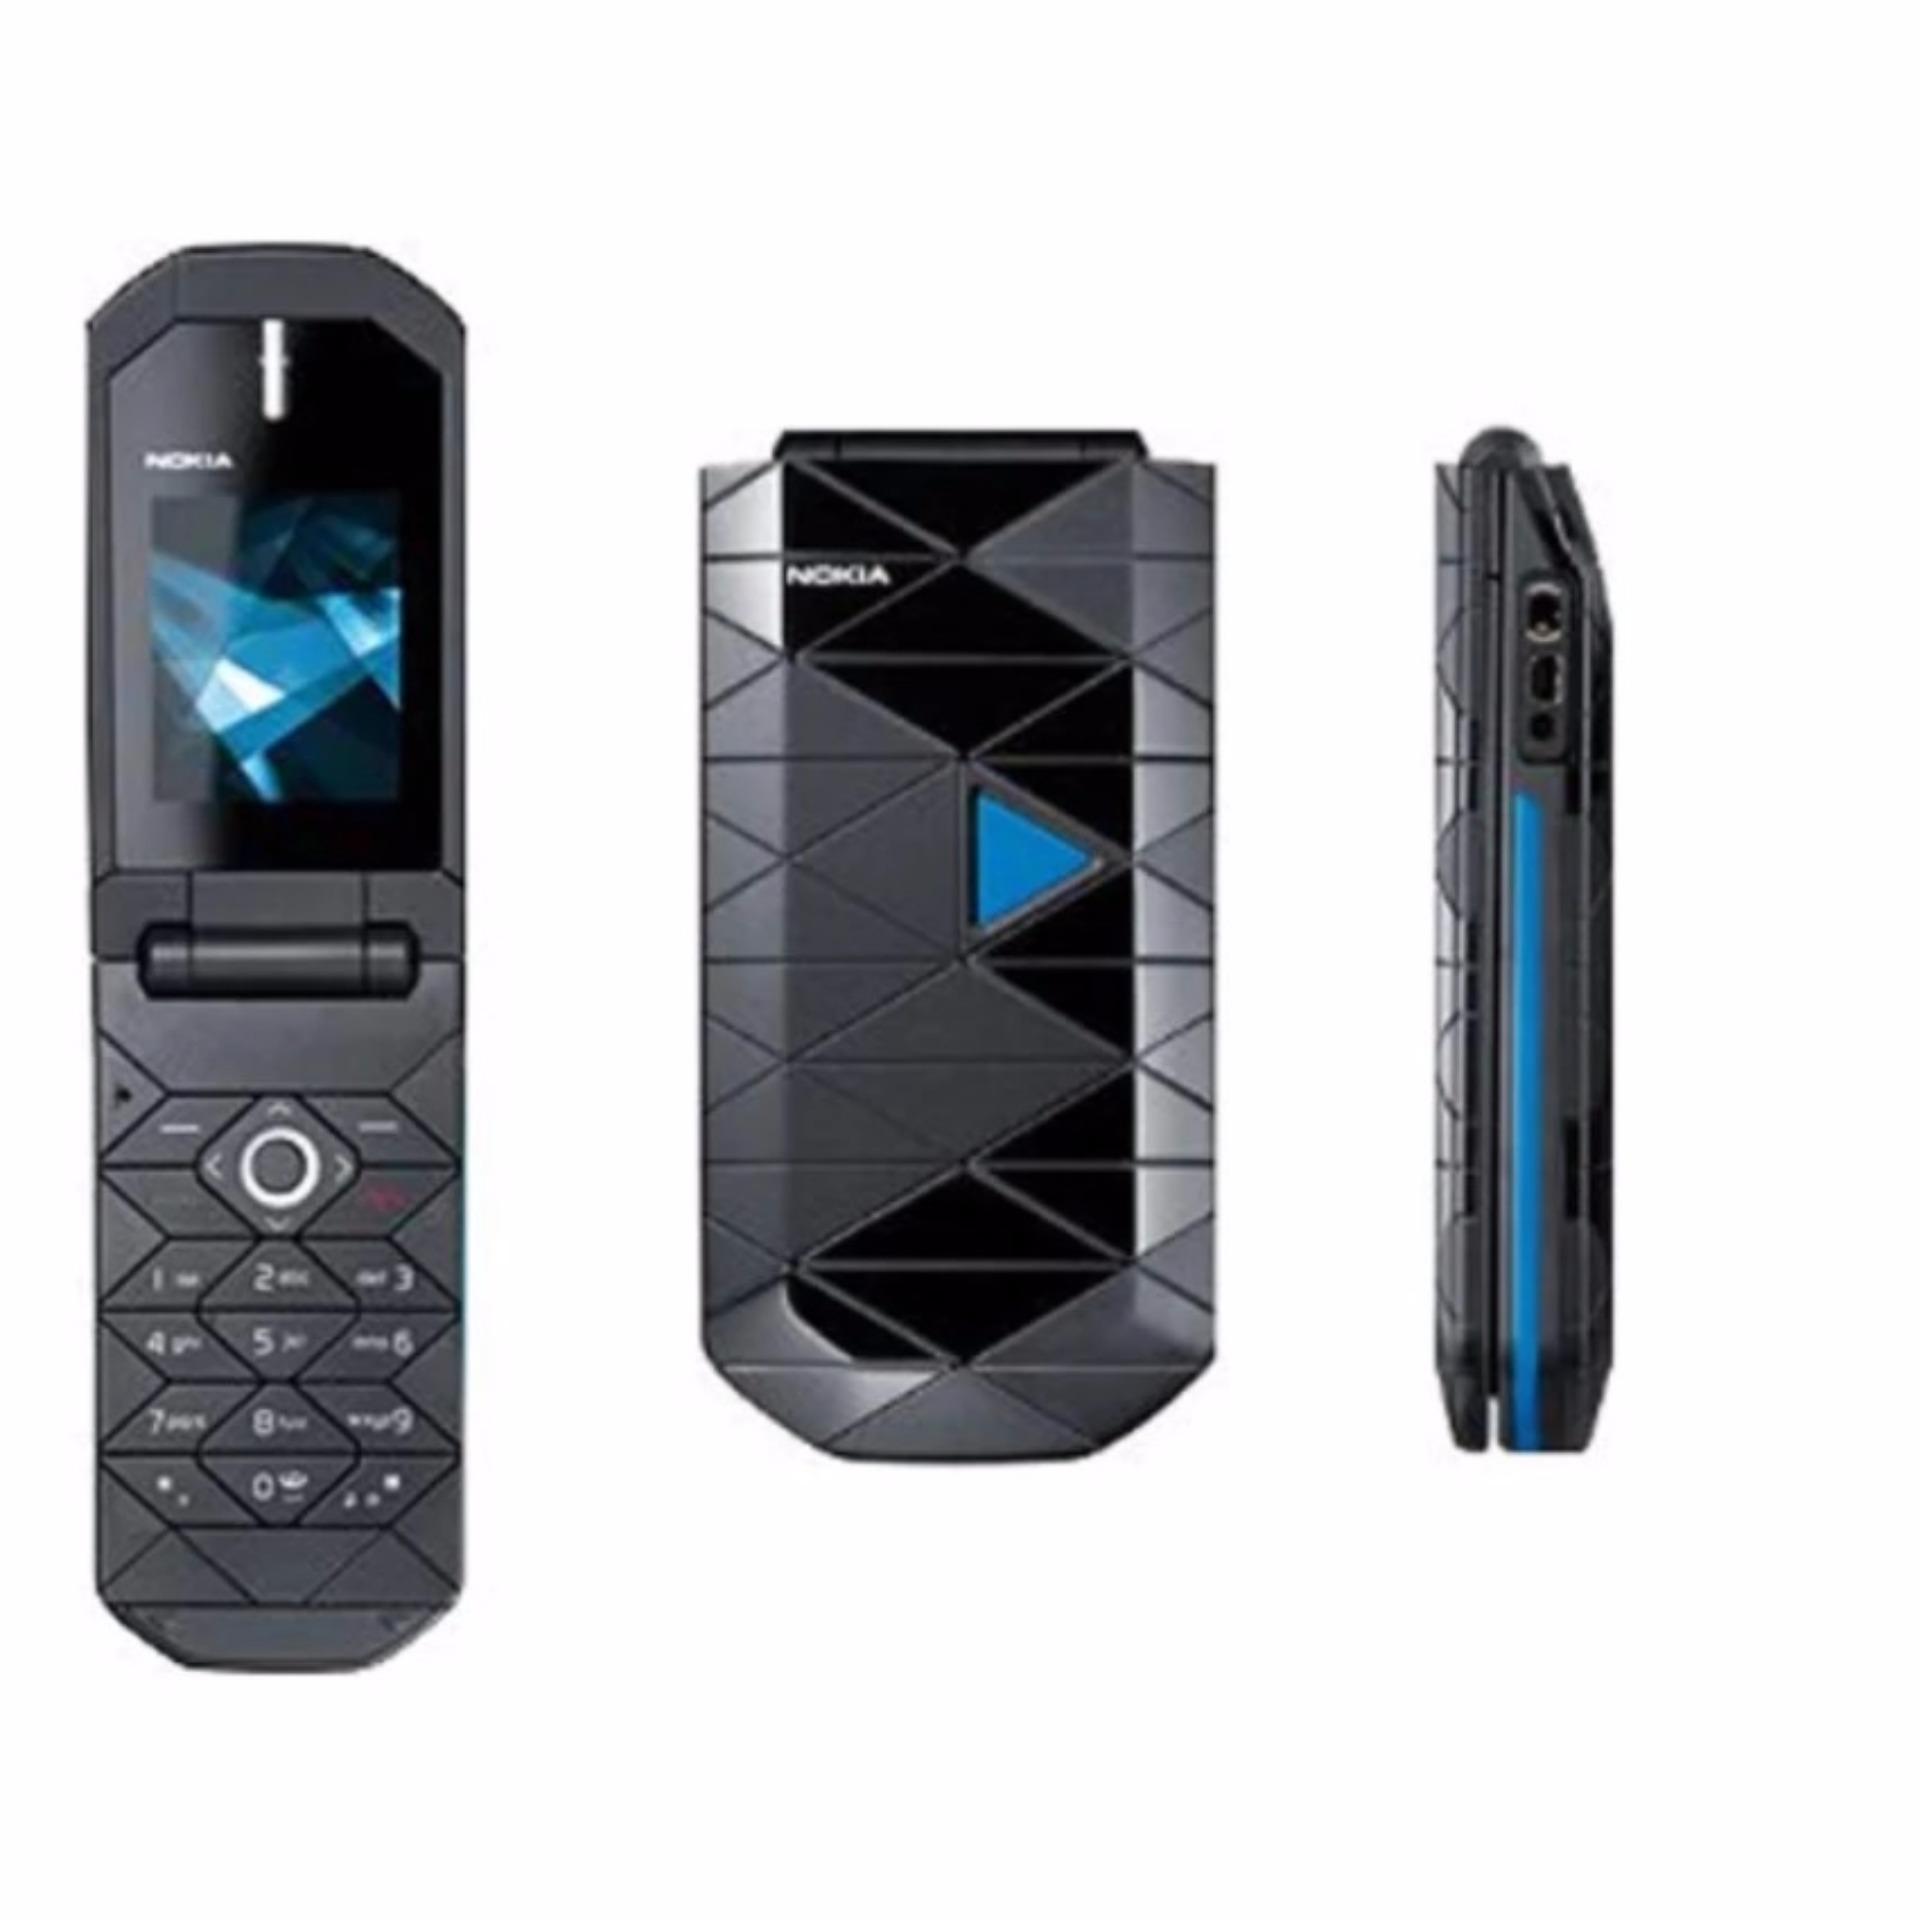 Handphone Nokia 7070 - Hitam/Biru